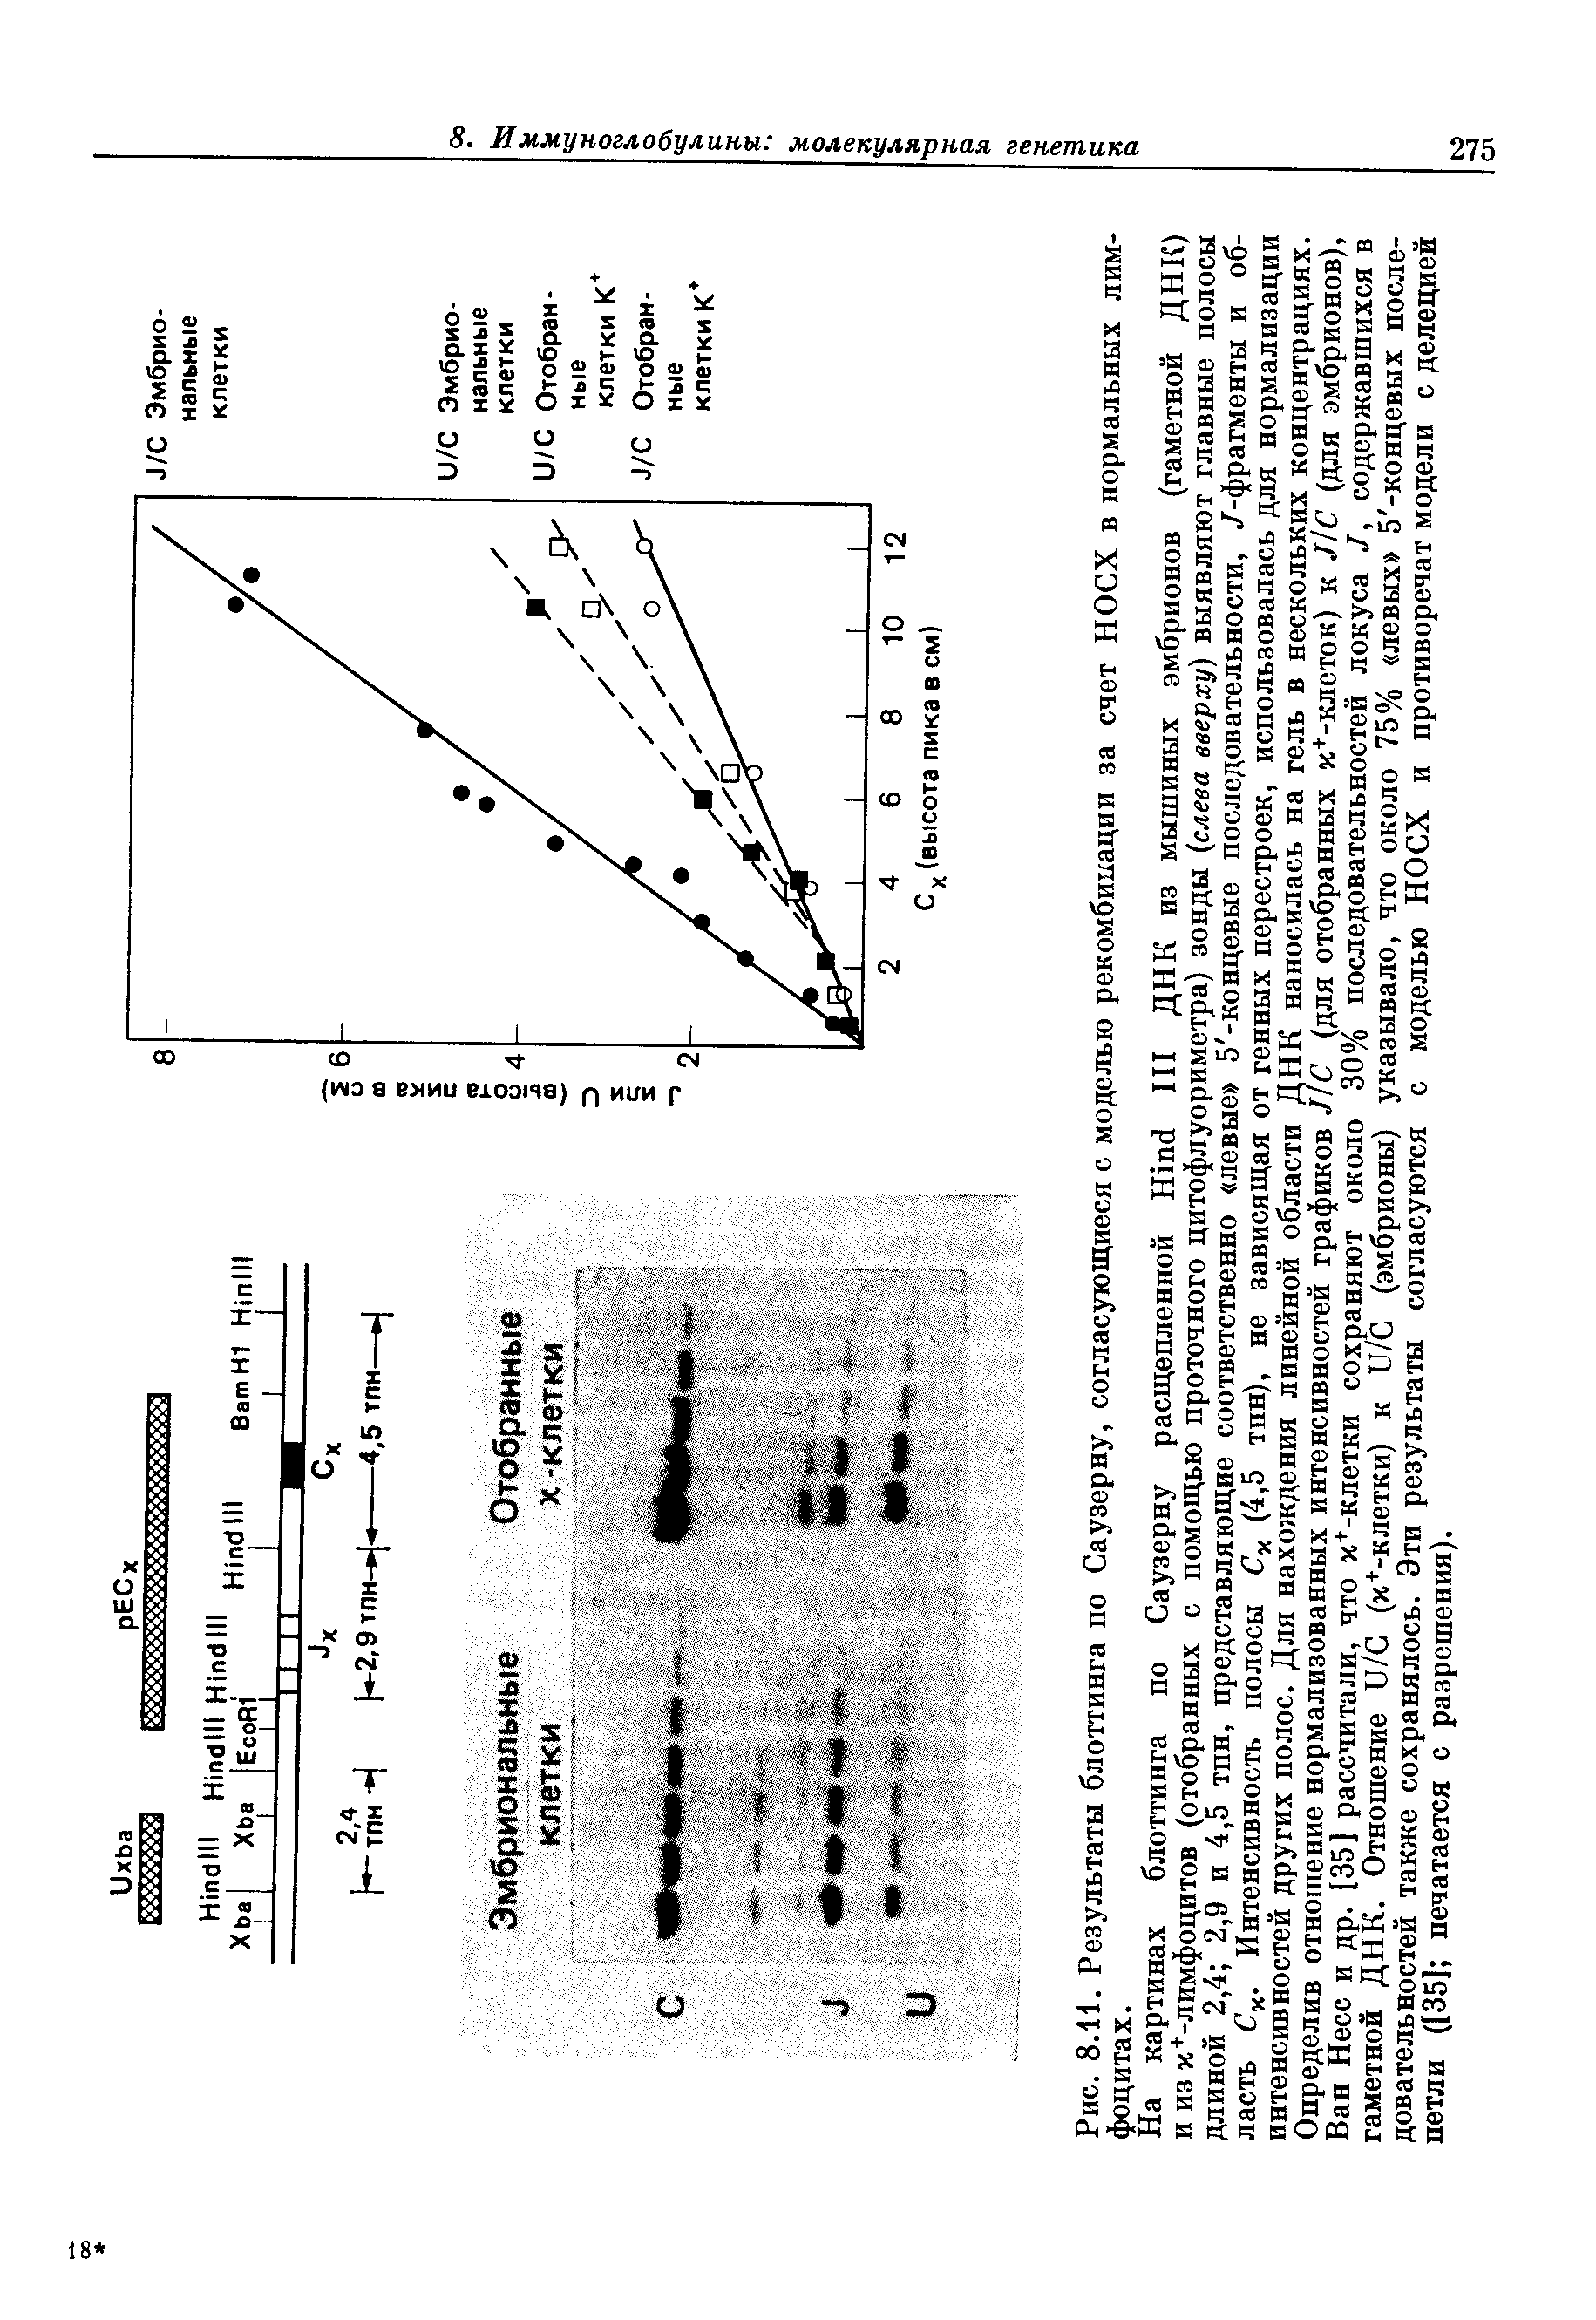 Рис. 8.11. Результаты блоттинга по Саузерну, согласующиеся с моделью рекомбинации за счет НОСХ в нормальных лимфоцитах.